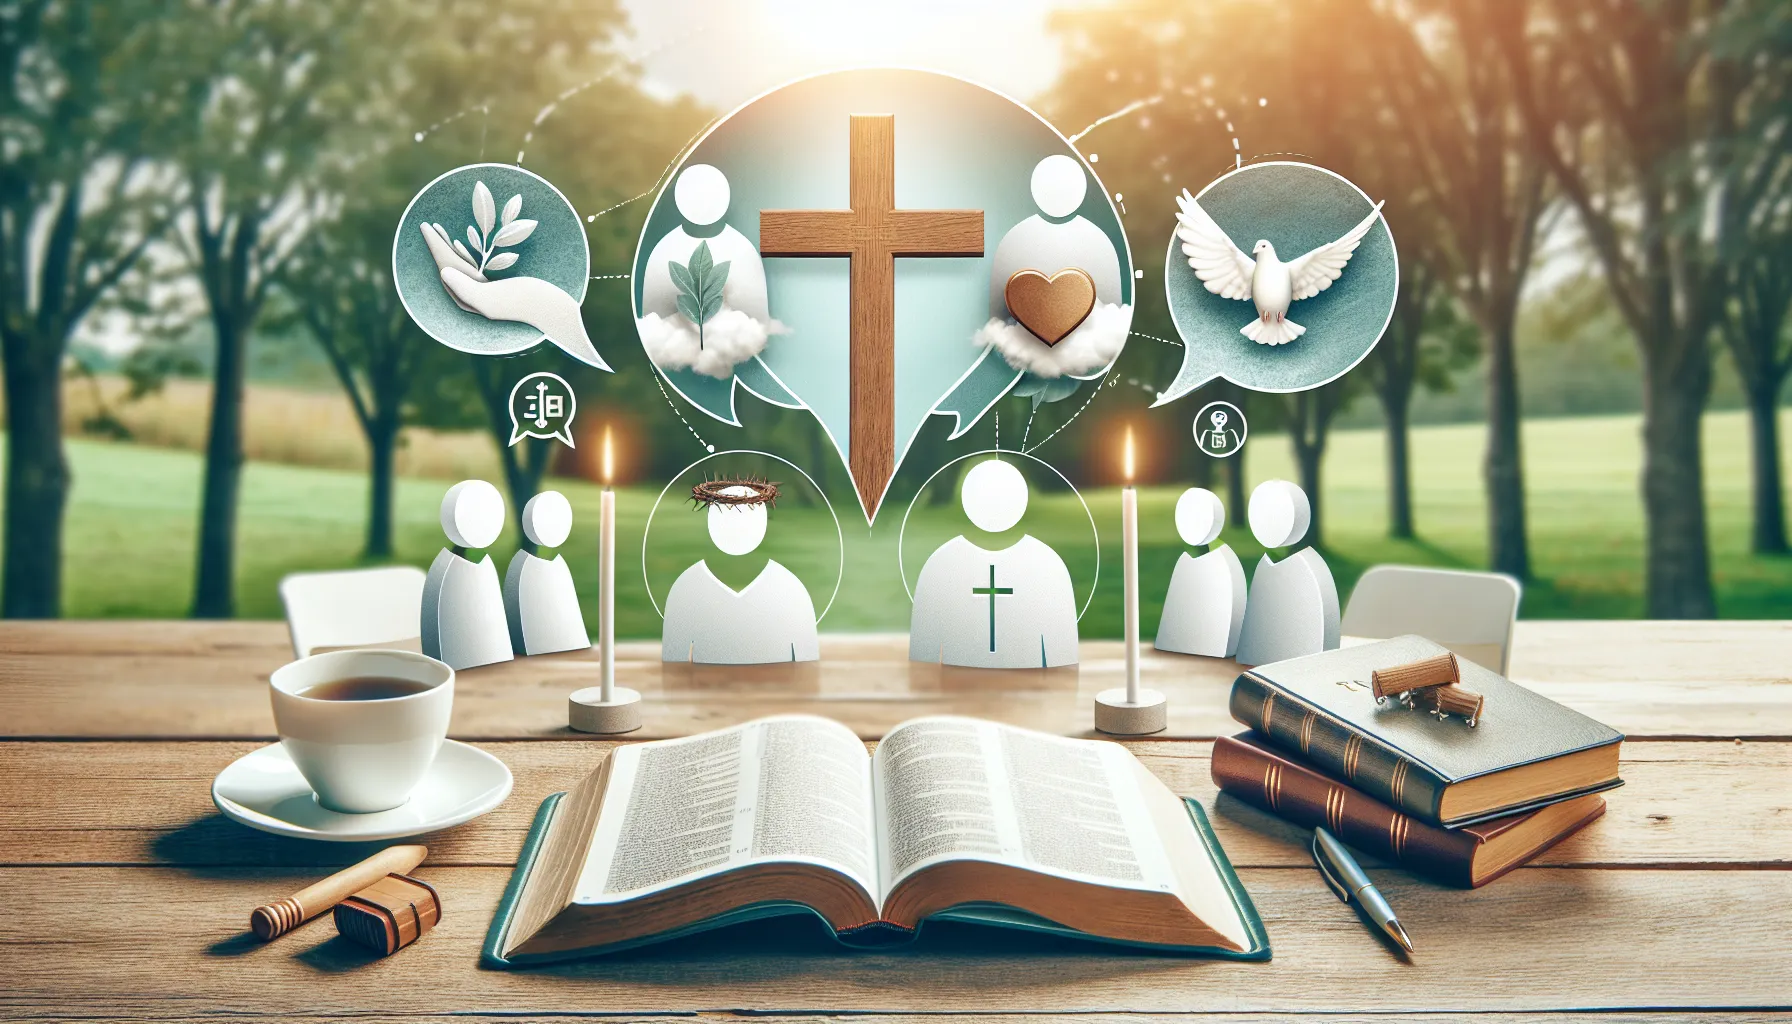 Imagen de portada del artículo sobre el liderazgo cristiano y la discusión de quiénes pueden ser líderes en la fe.